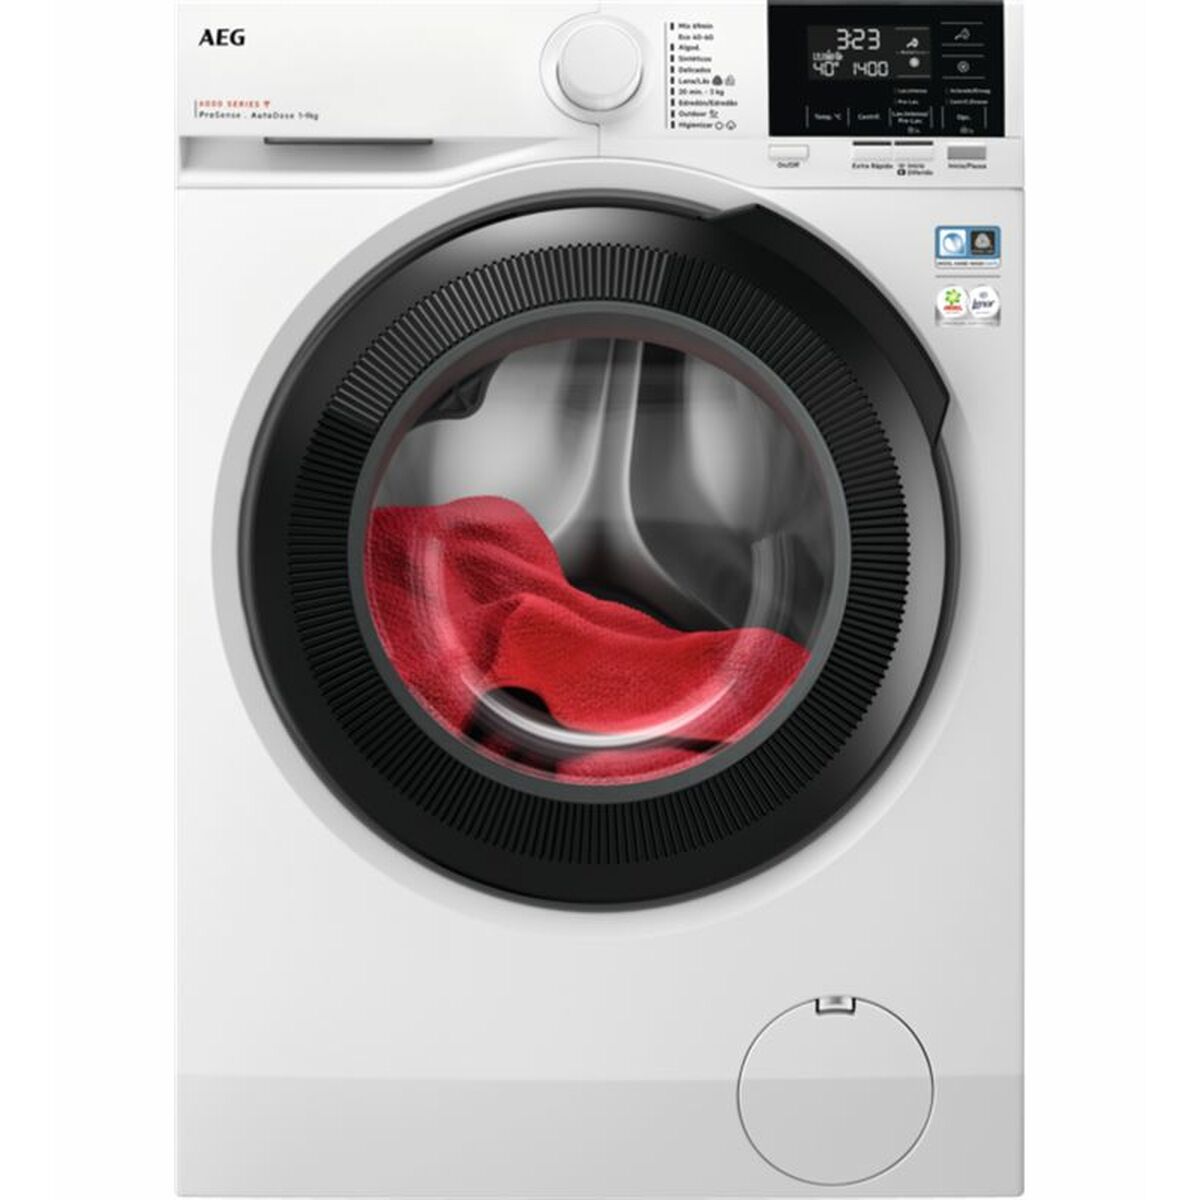 Washing machine AEG 1400 rpm 9 kg